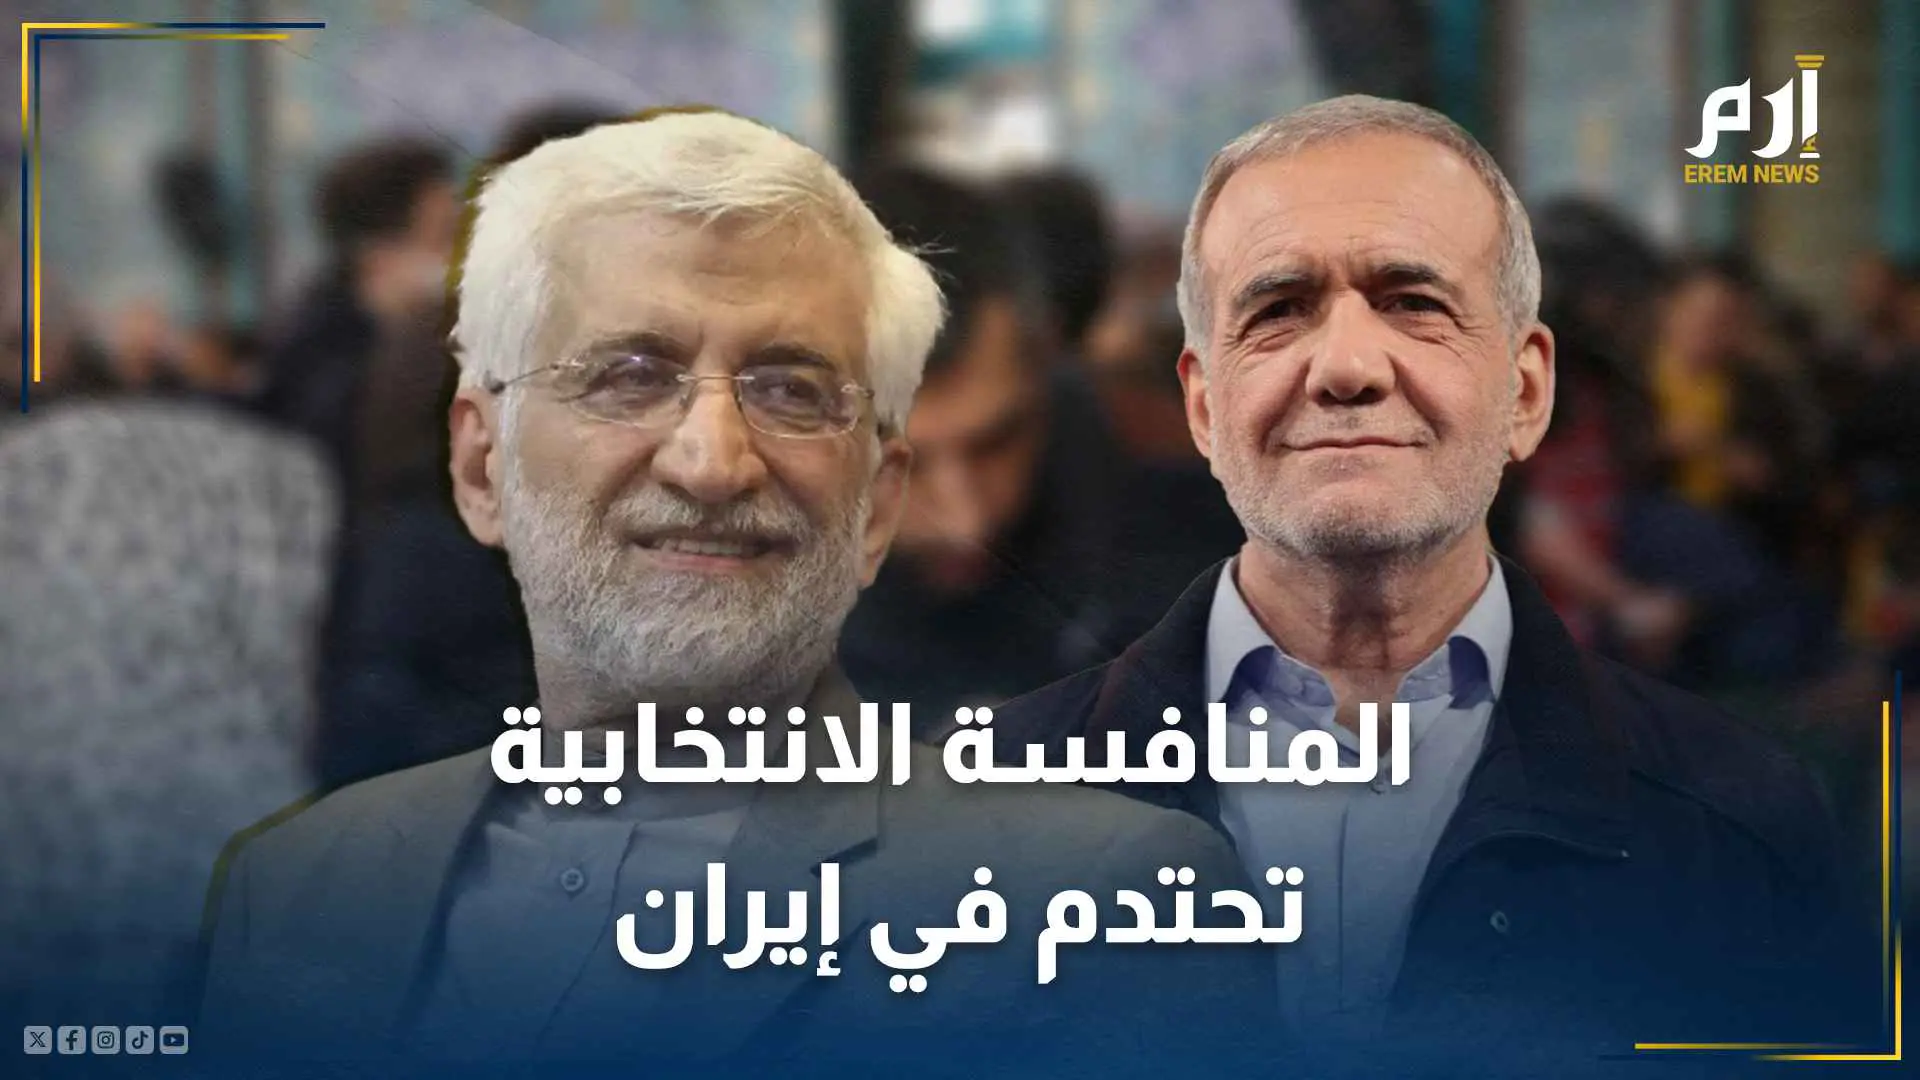 مناظرة "نارية" بين بزشكيان وجليلي.. المنافسة الانتخابية تحتدم في إيران